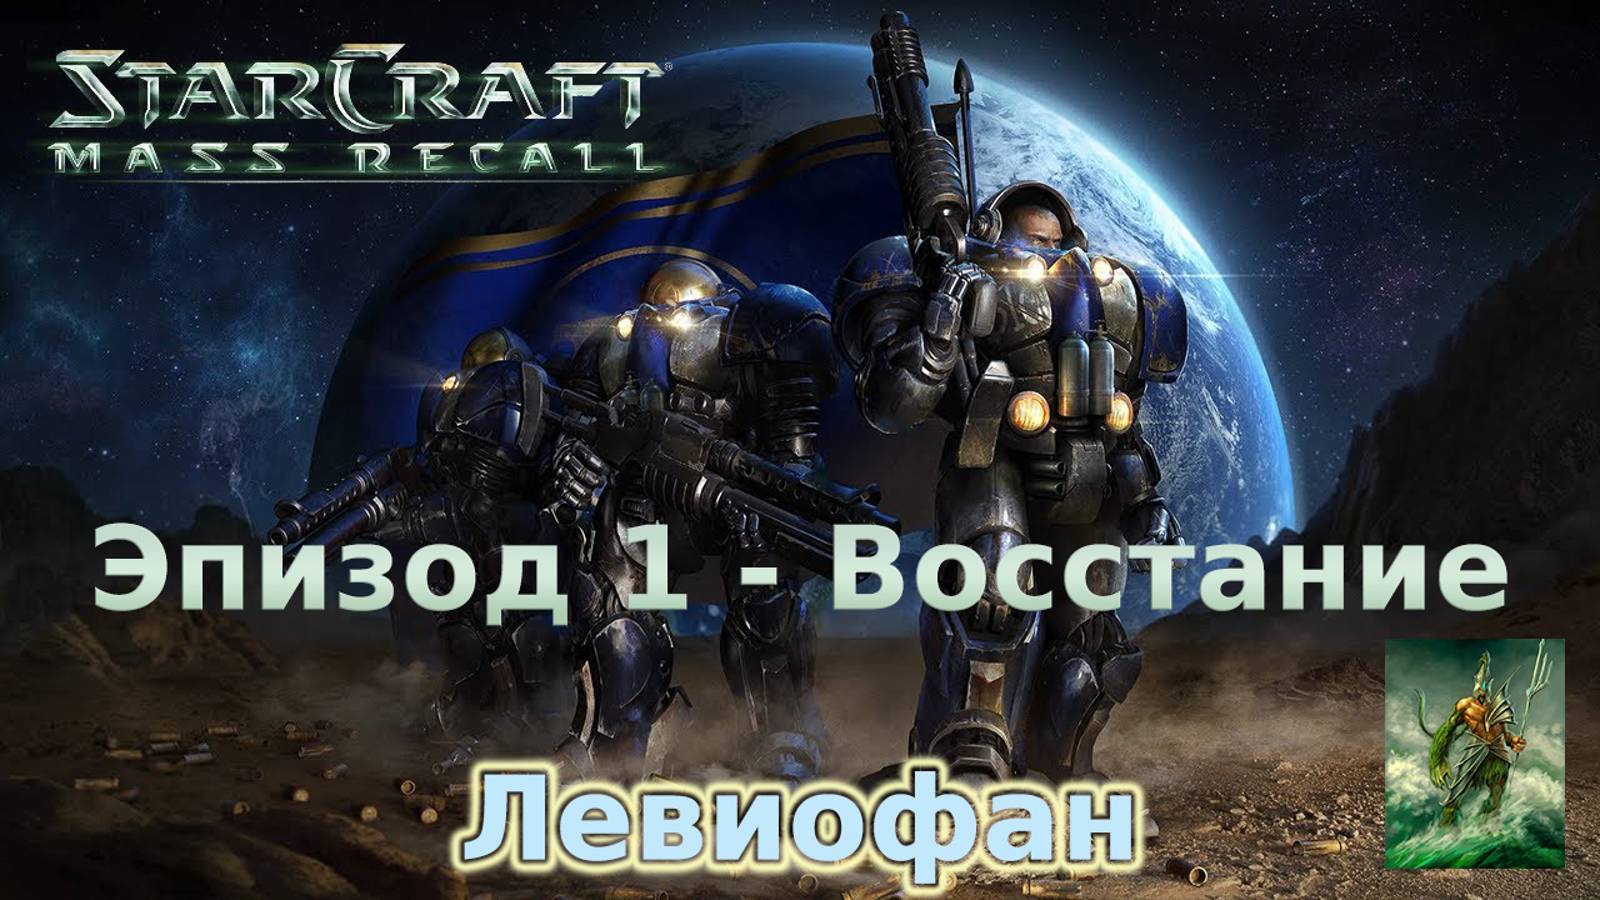 StarCraft II Mass Recall. Эпизод 1 - Восстание. Миссия 1 - Вводный курс и Миссия 2 - Пустошь.